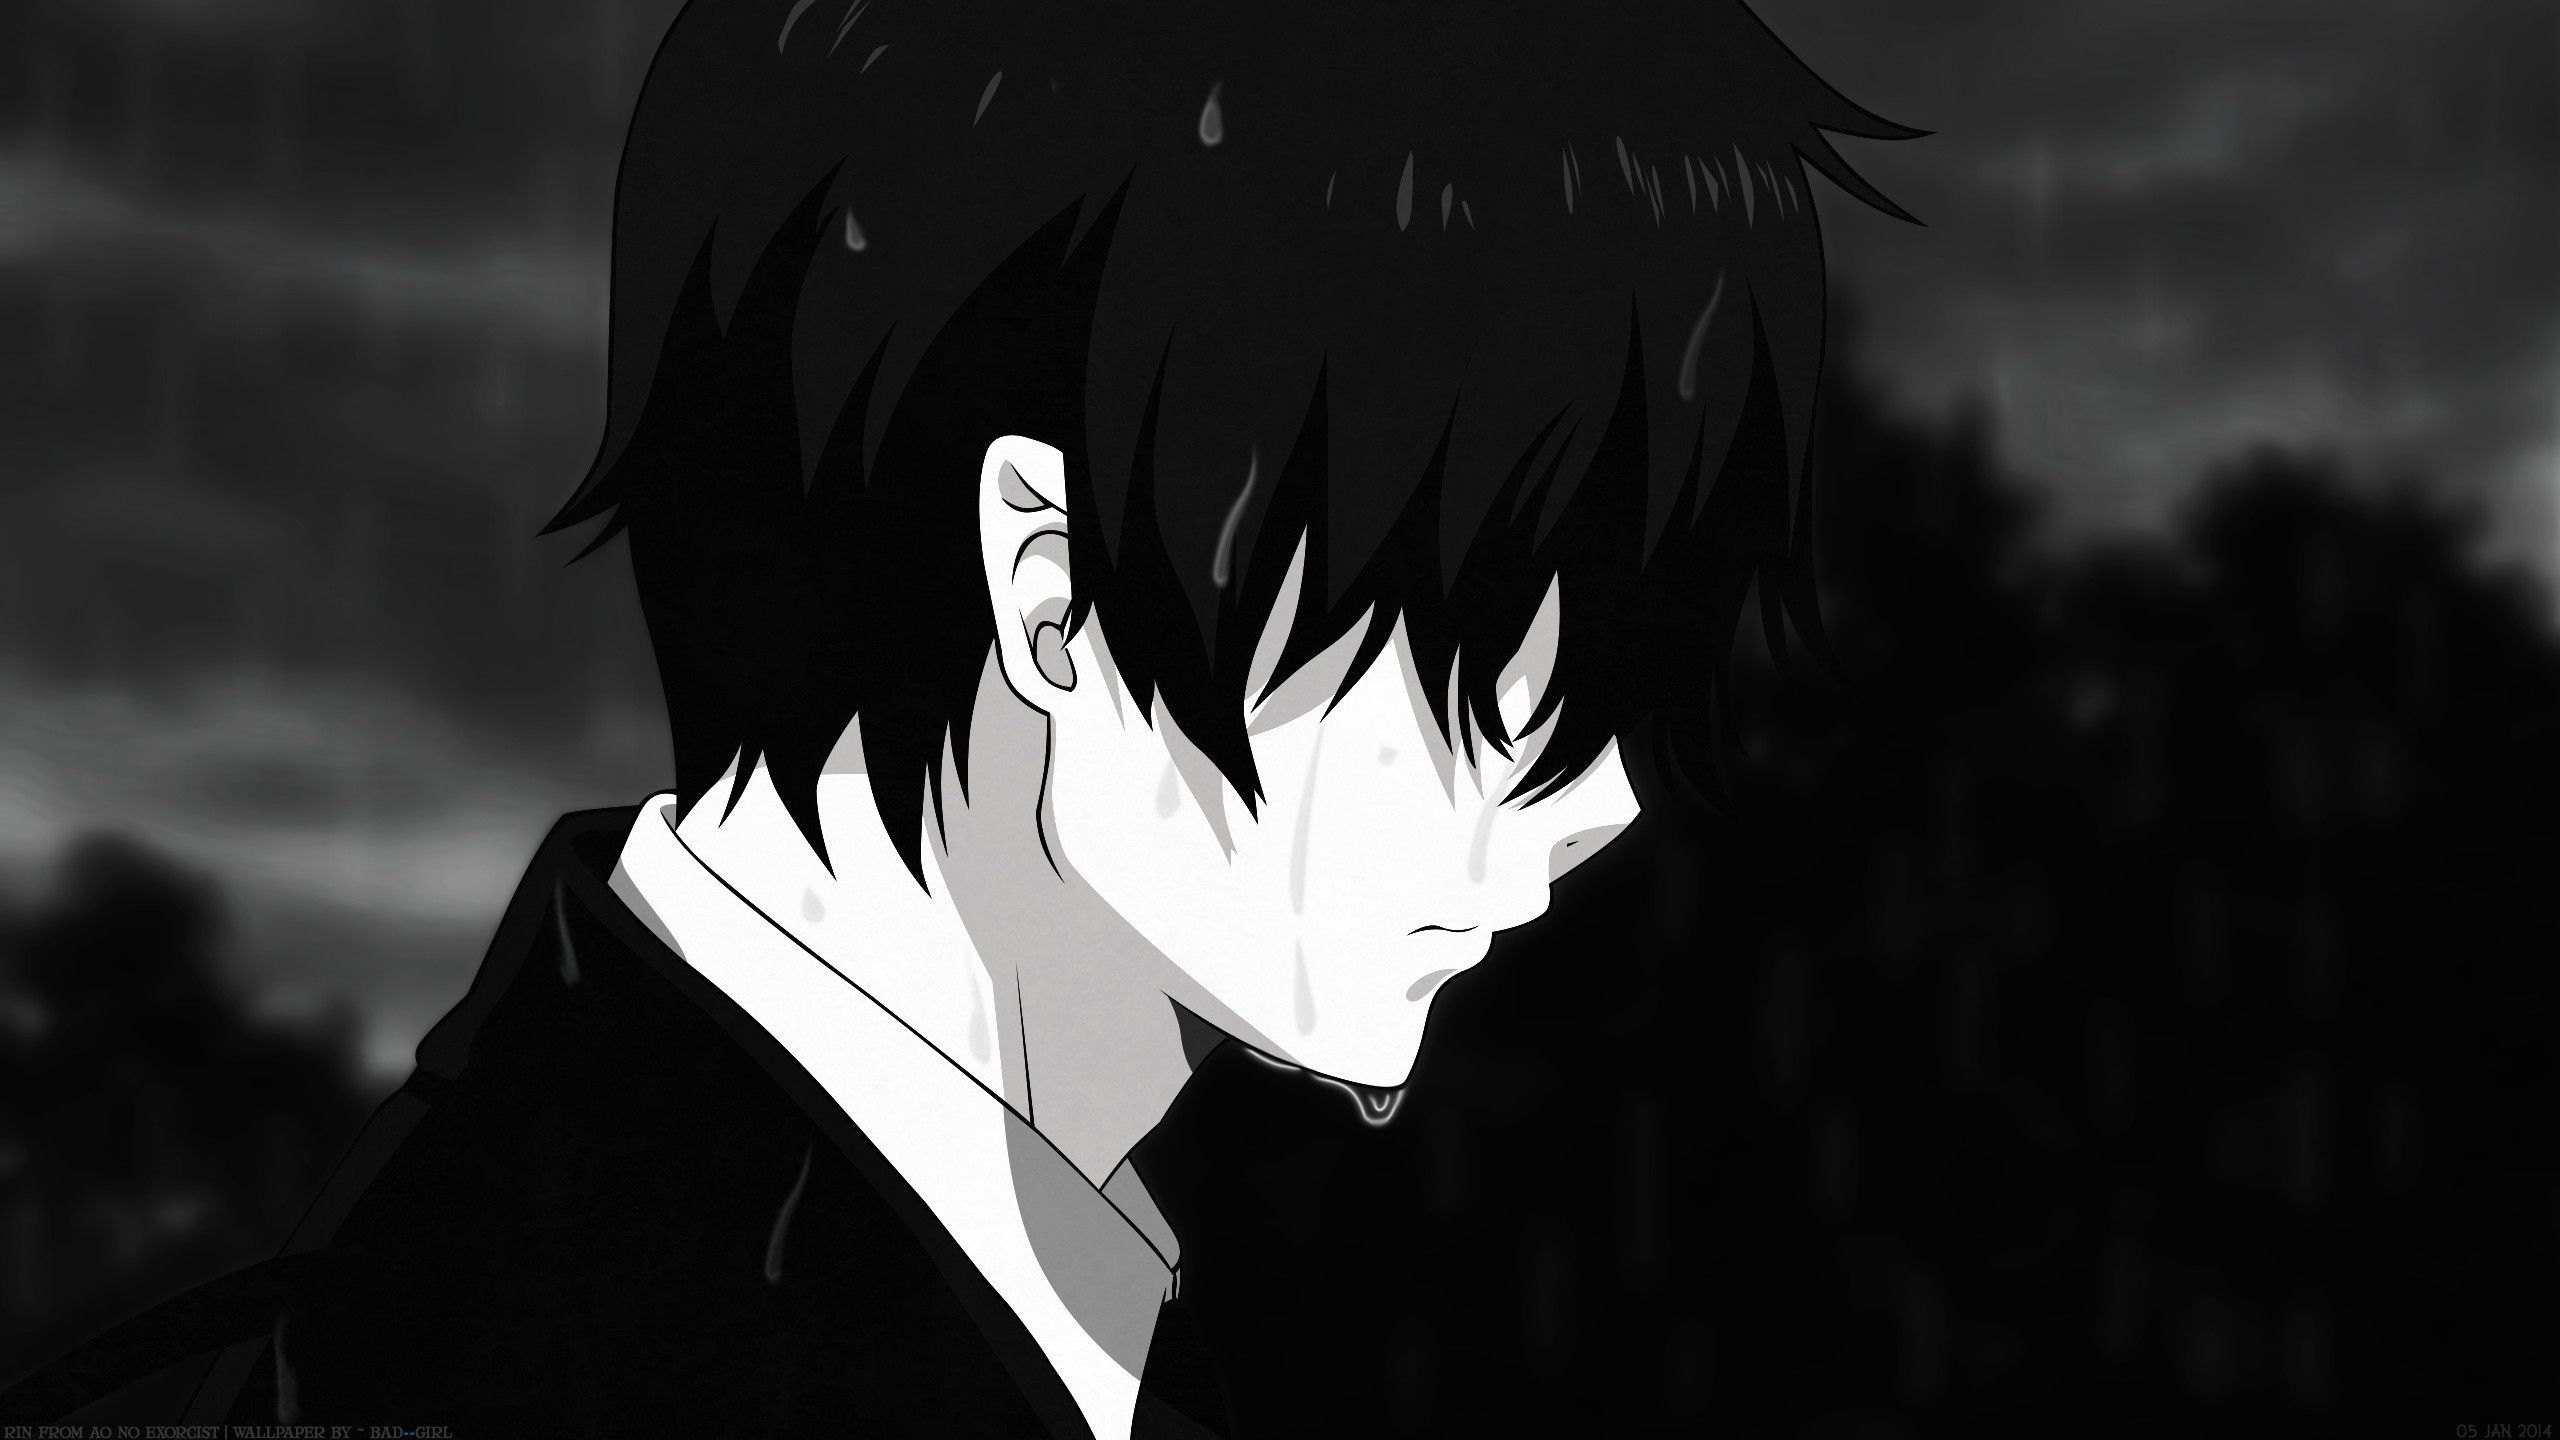 Sad Anime Boy Wallpapers   Top Sad Anime Boy Backgrounds 2560x1440